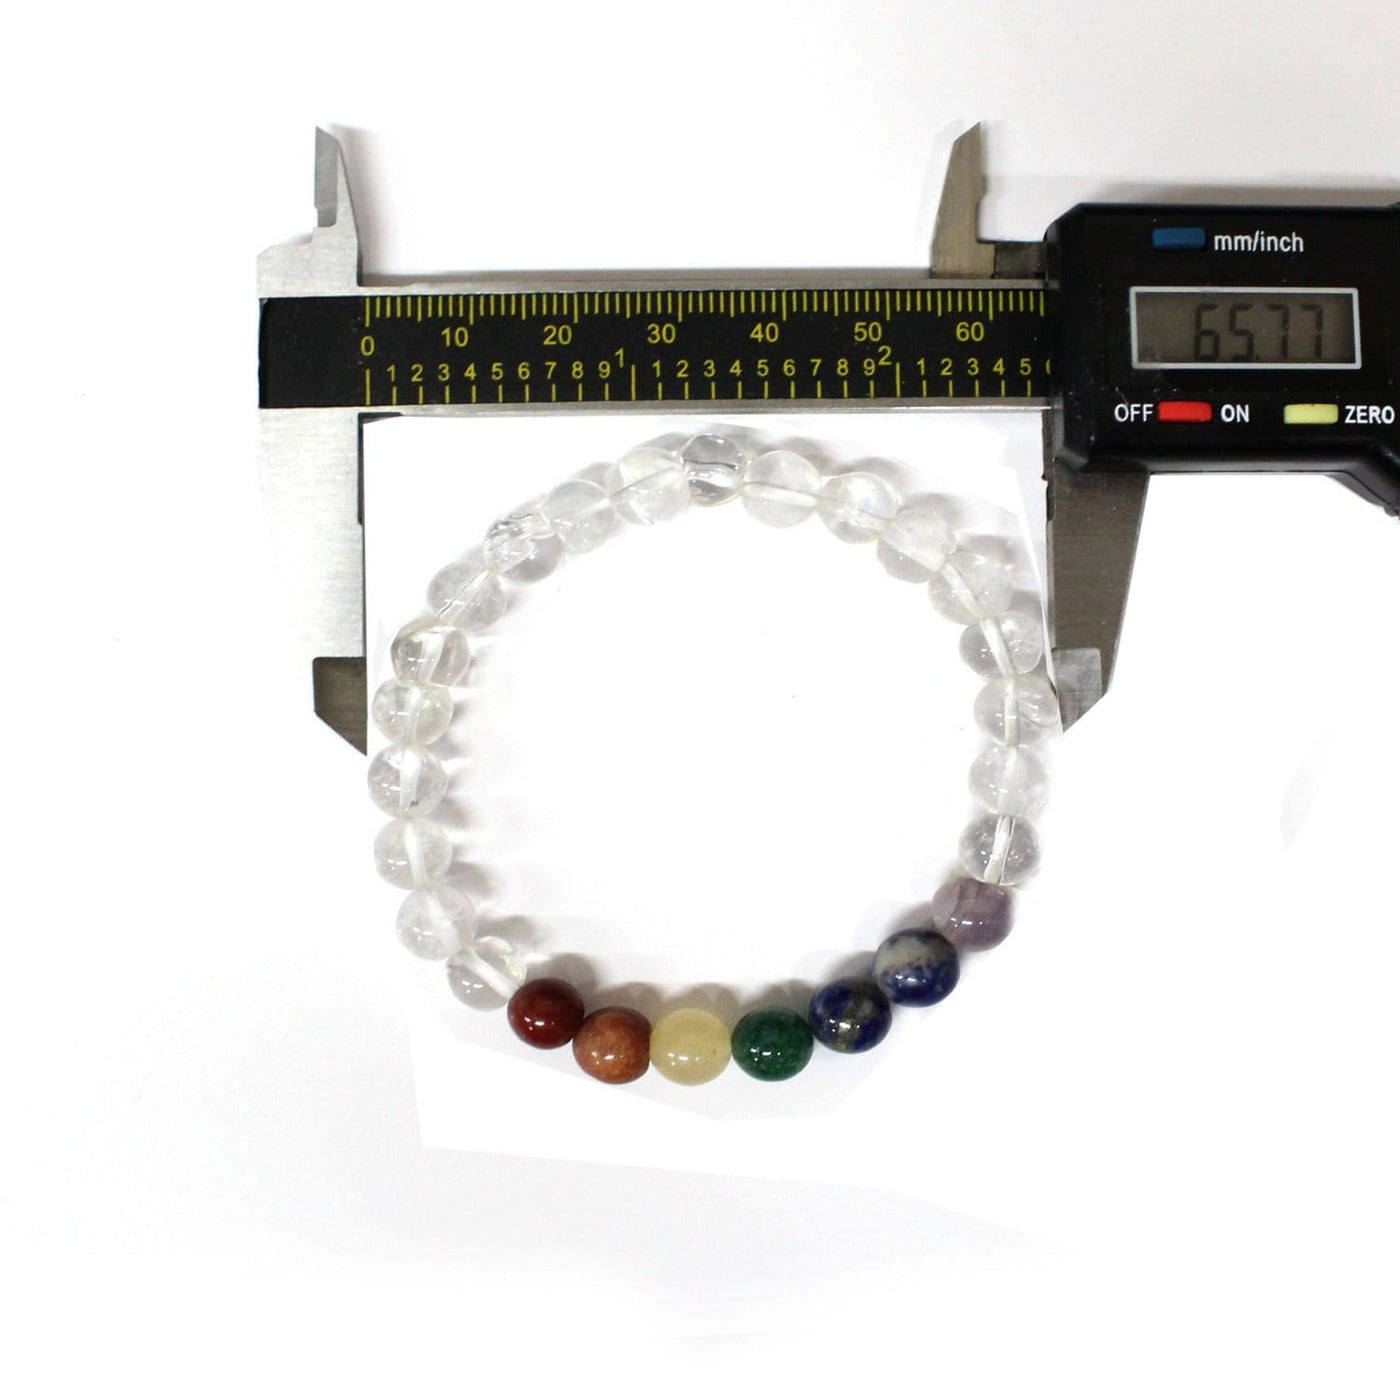 bracelets being measured